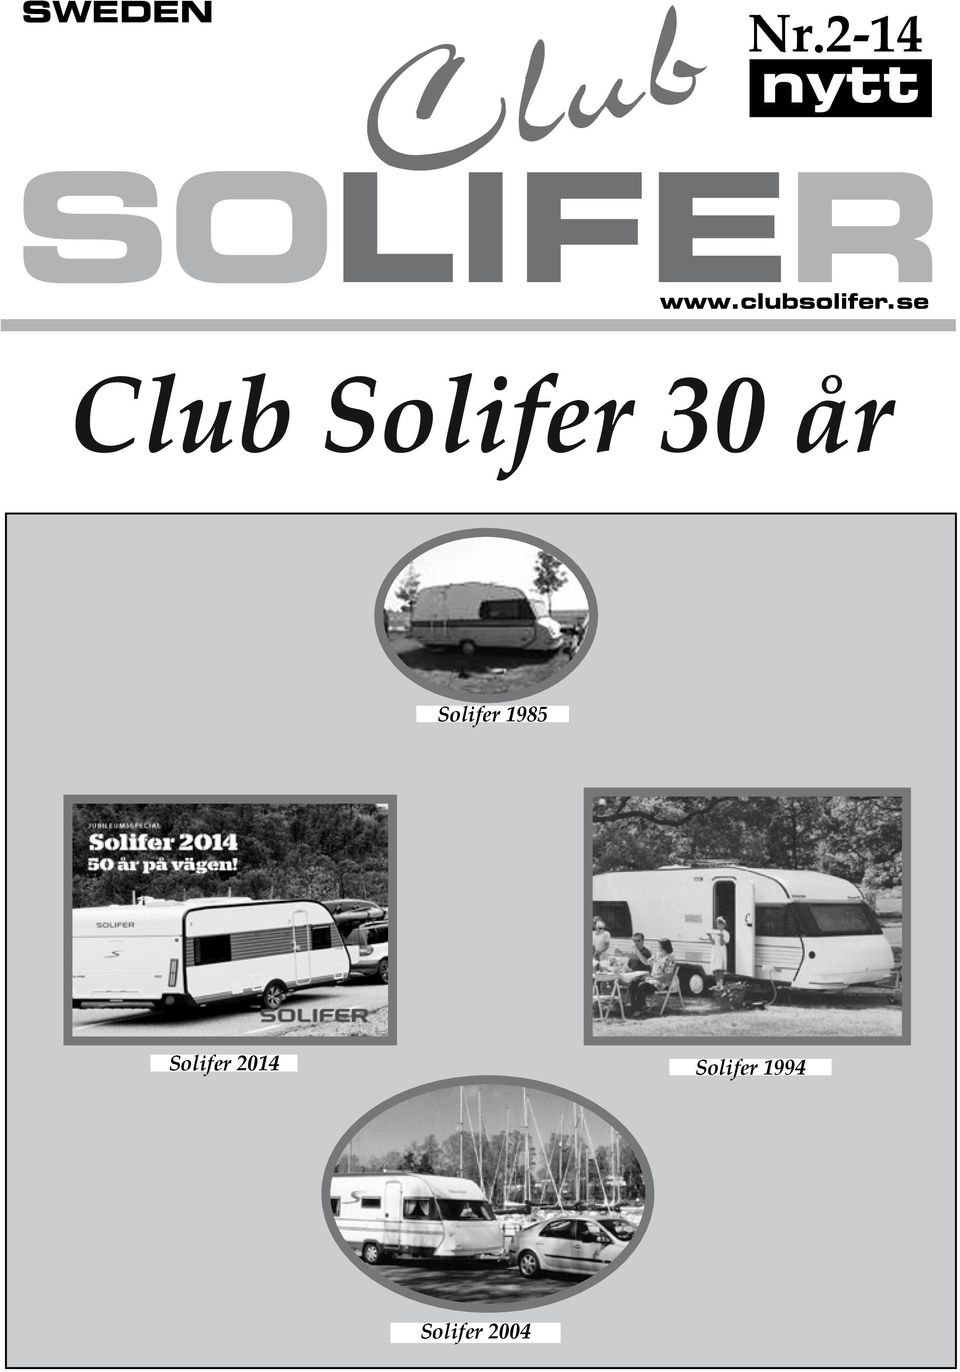 Solifer 1985